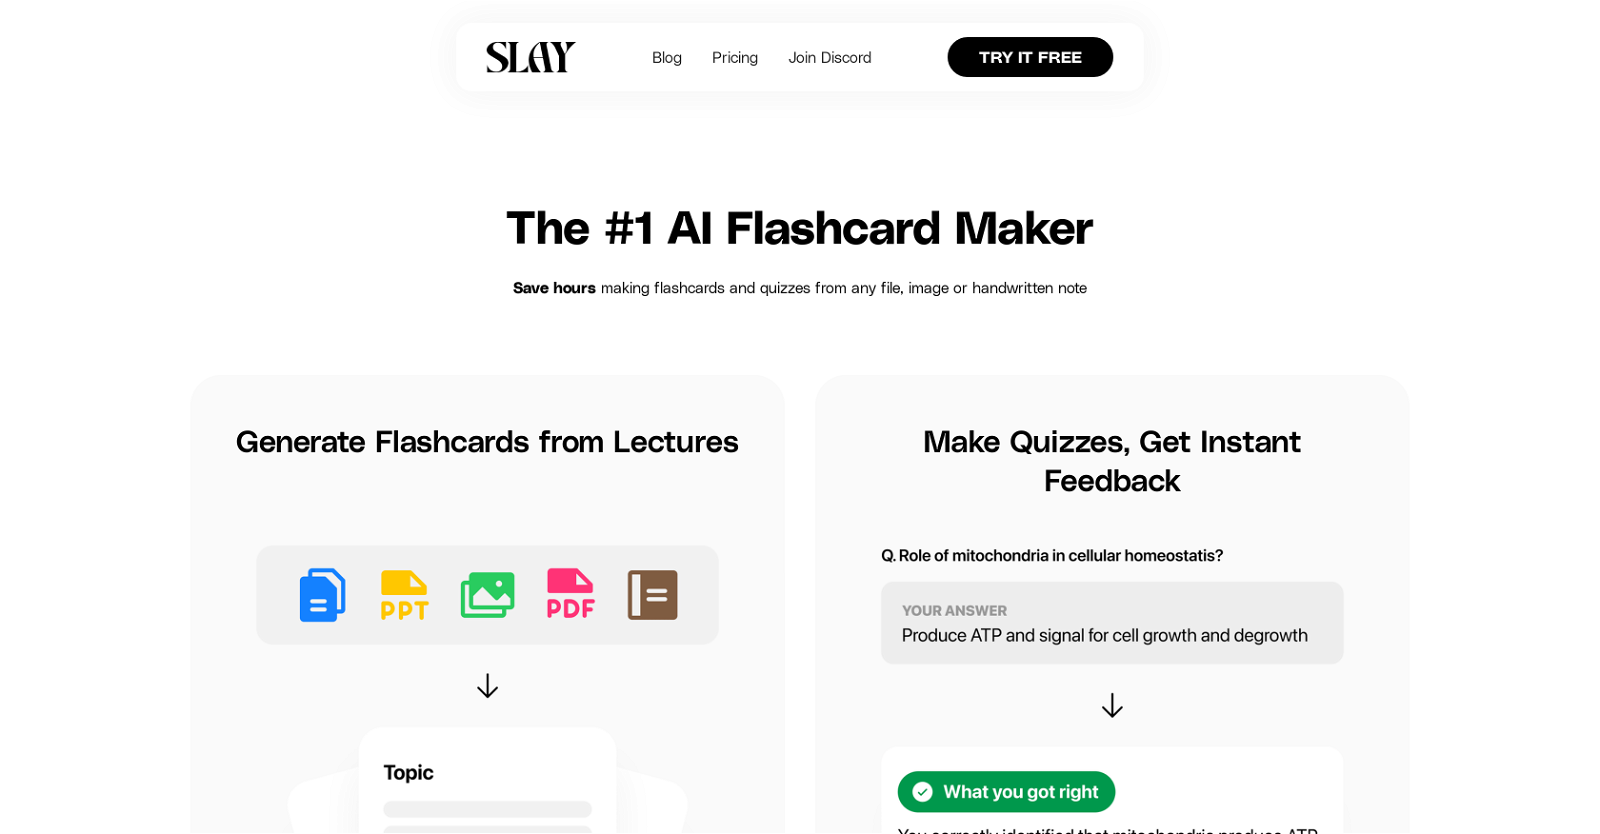 Flashcard Maker App - Flashcard Desktop Application & Mobile